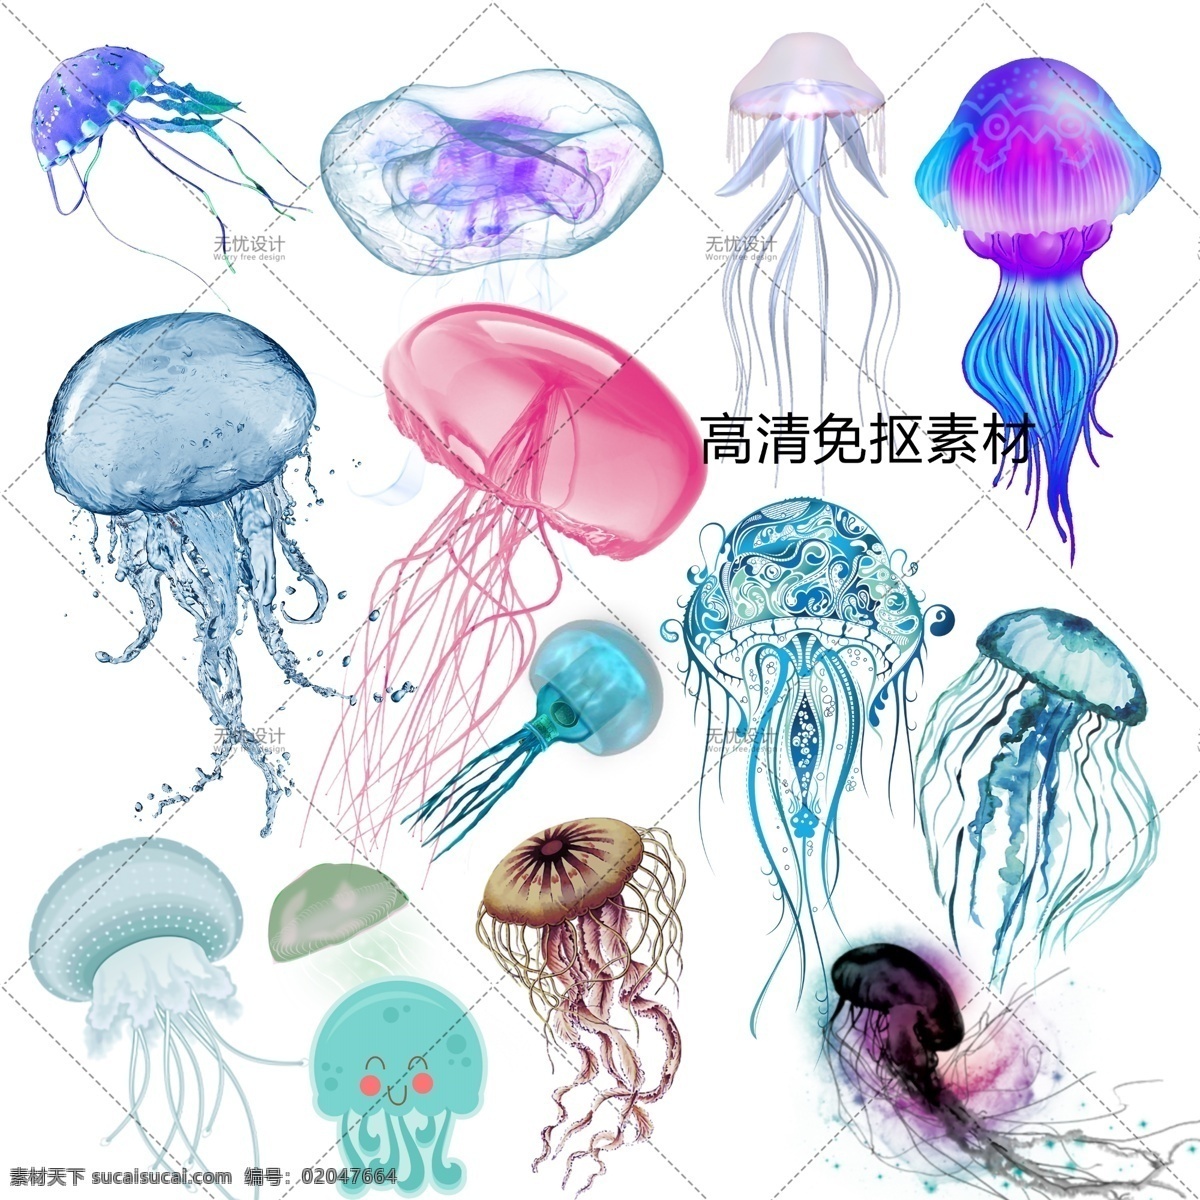 透明素材 png抠图 云母 海蜇 水产 浮游生物 海月水母 灯箱水母 十字水母 僧帽水母 水螅水母 管水母 分层 海洋 免抠素材